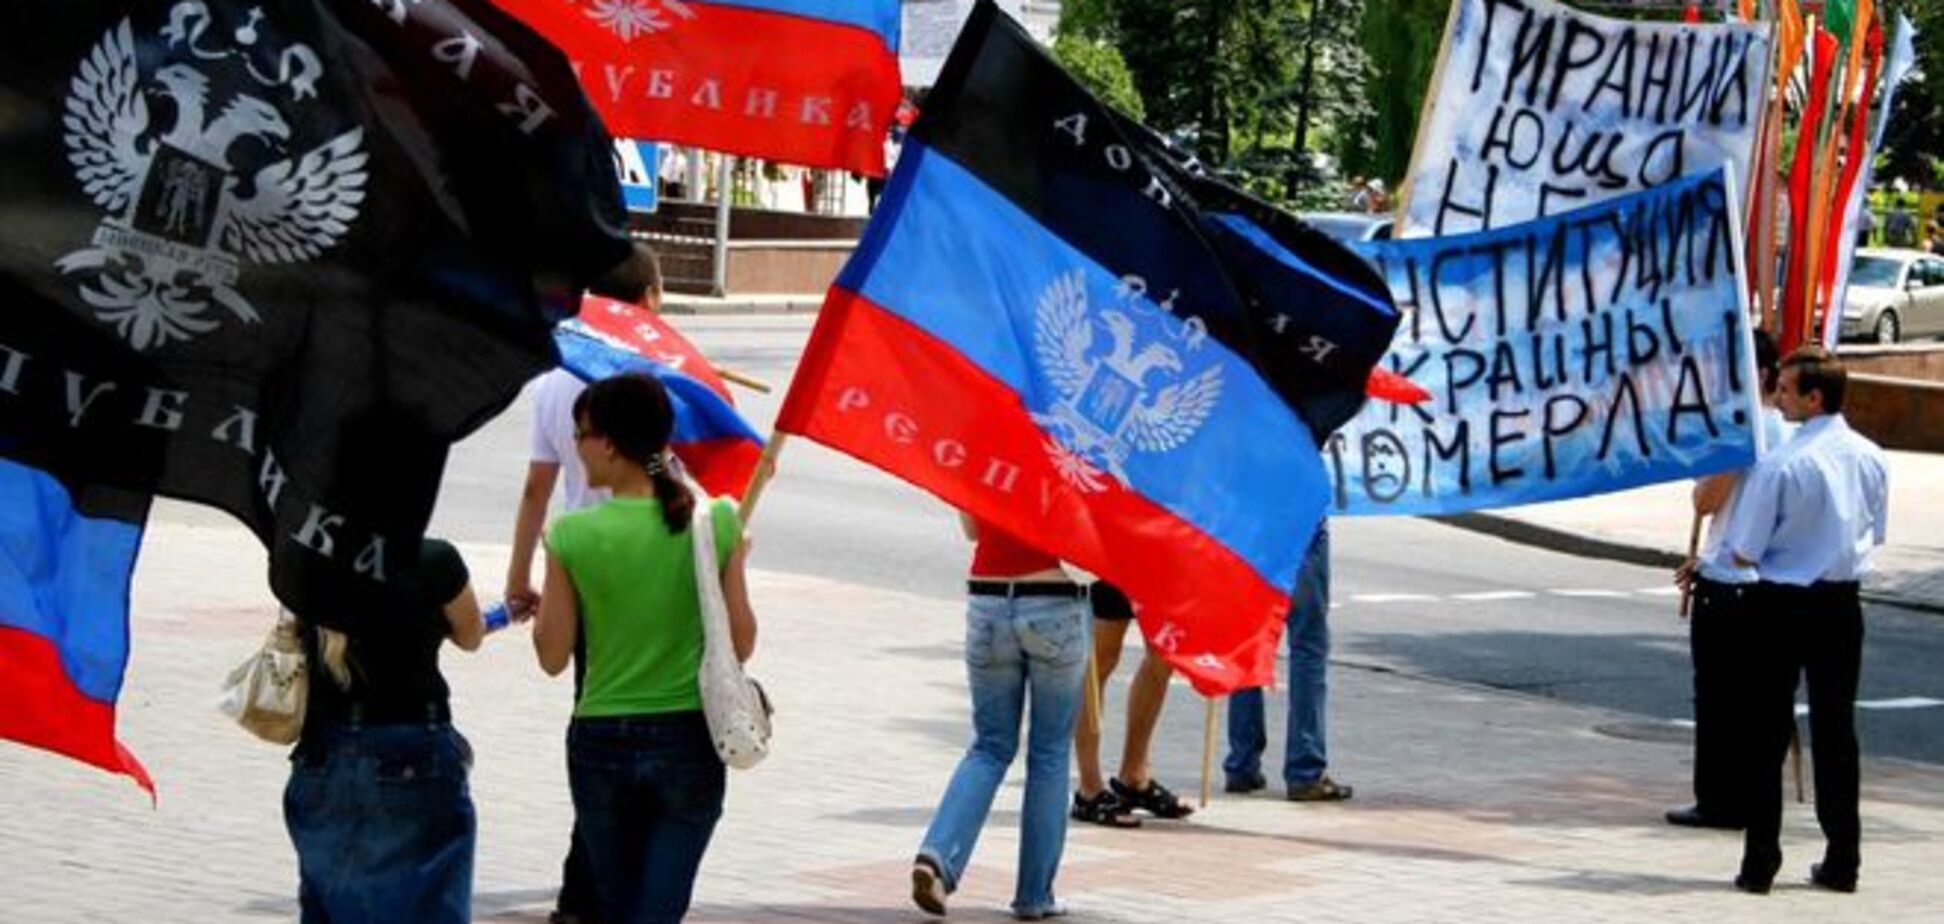 Прапори 'ДНР' у центрі Донецька вісім років тому: фотофакт